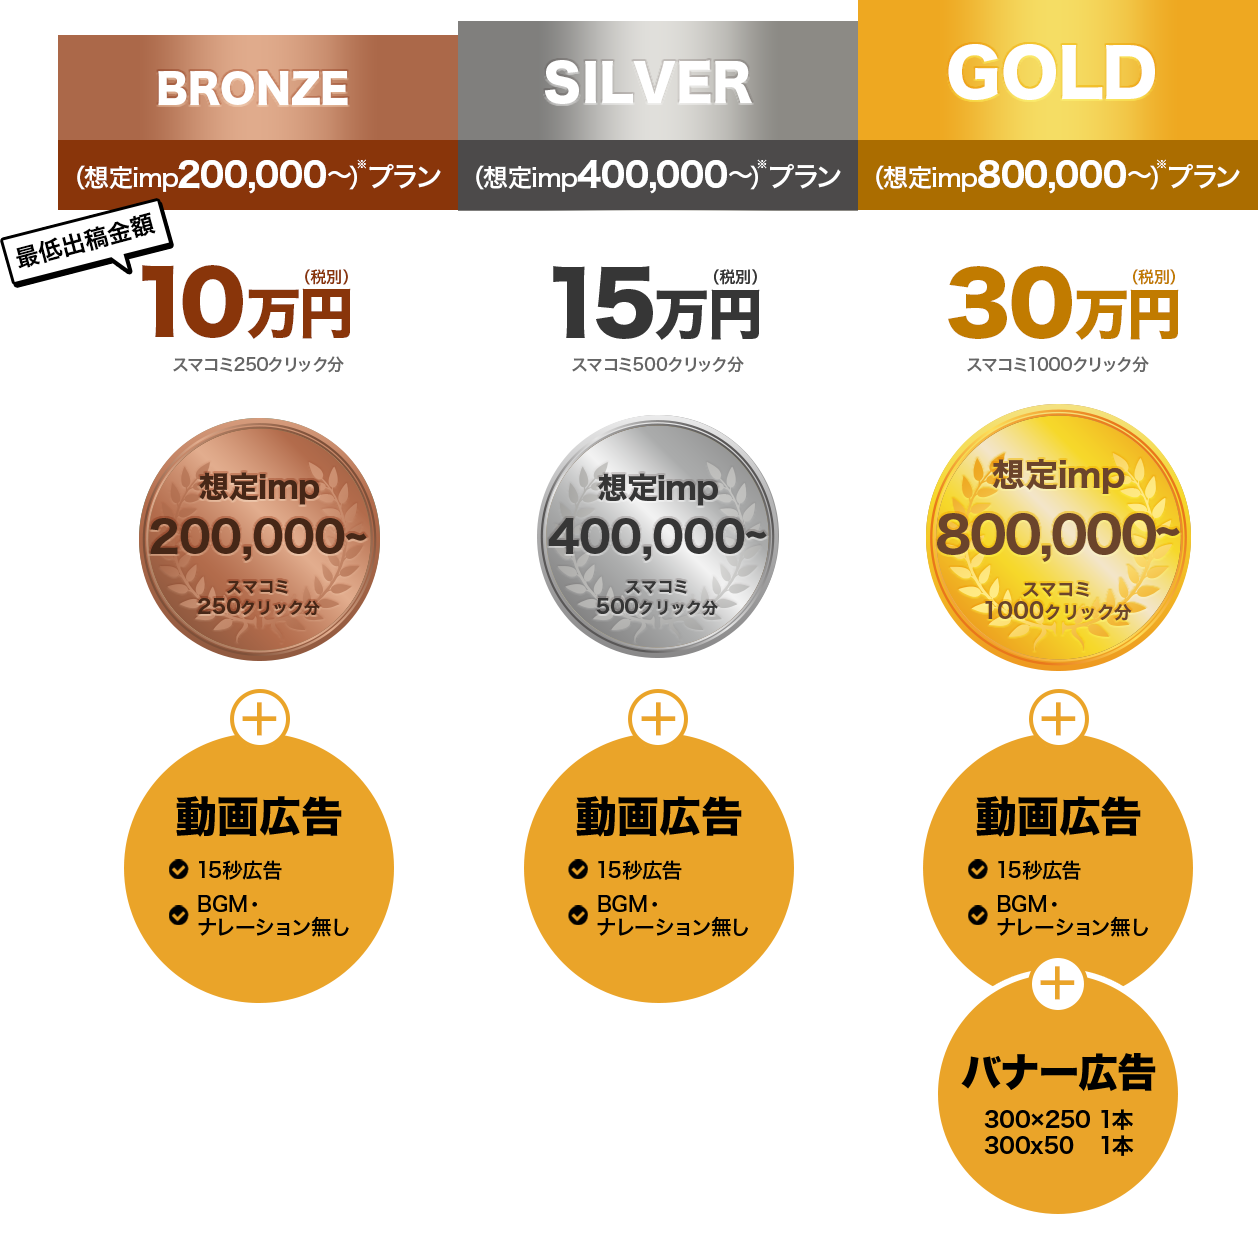 BRONZE（8,000回～）プラン　SILVER（16,000回～）プラン　GOLD（350,000回～）プラン